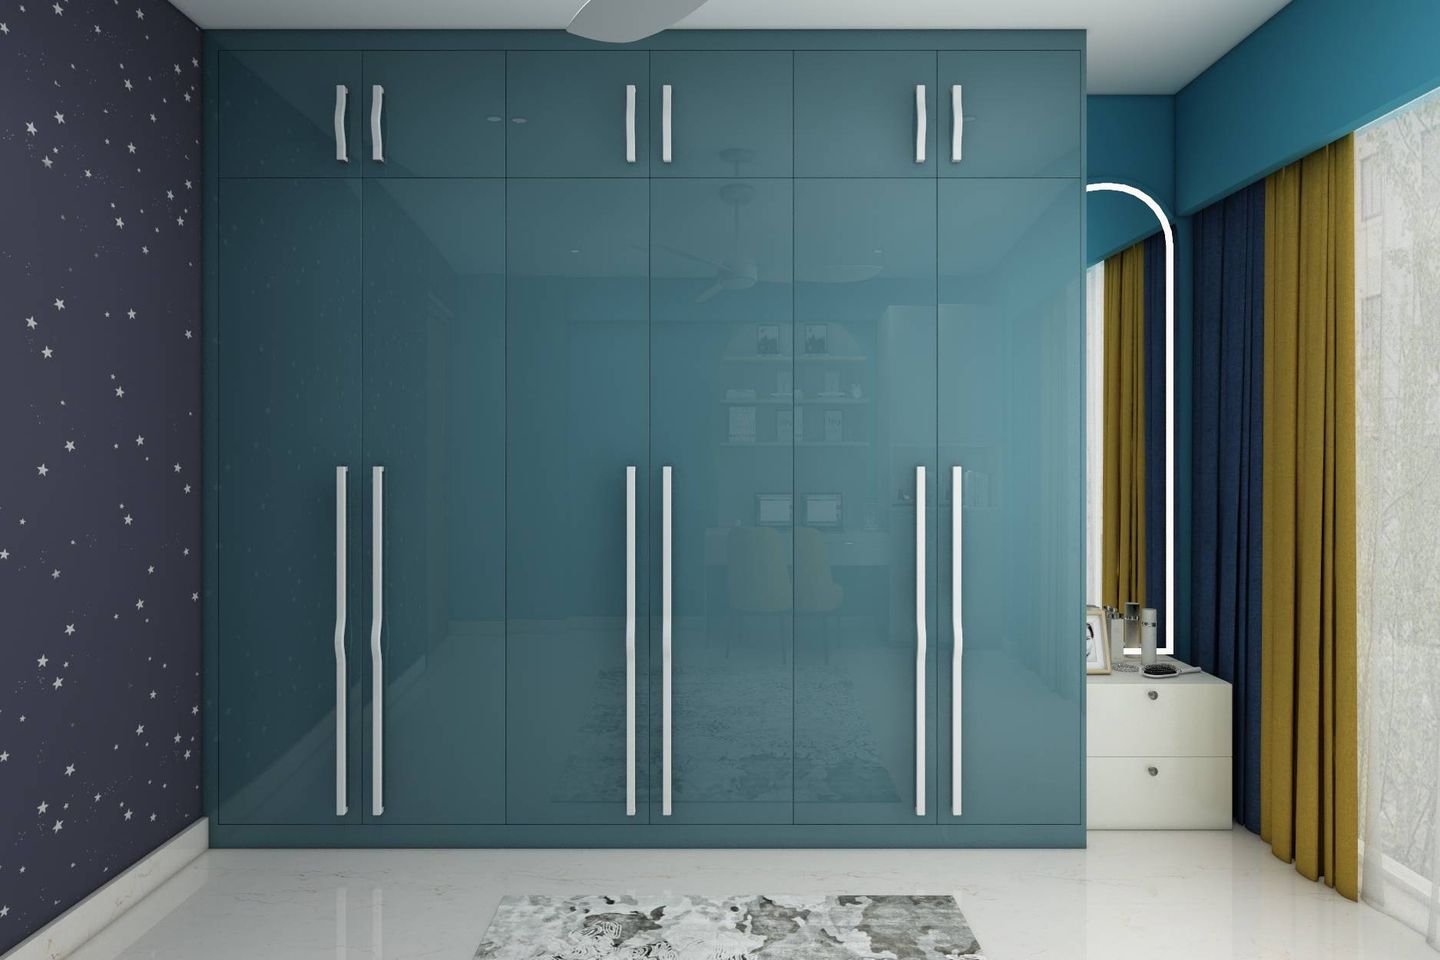 Teal Blue 6-Door Swing Wardrobe Design With Lofts - Livspace